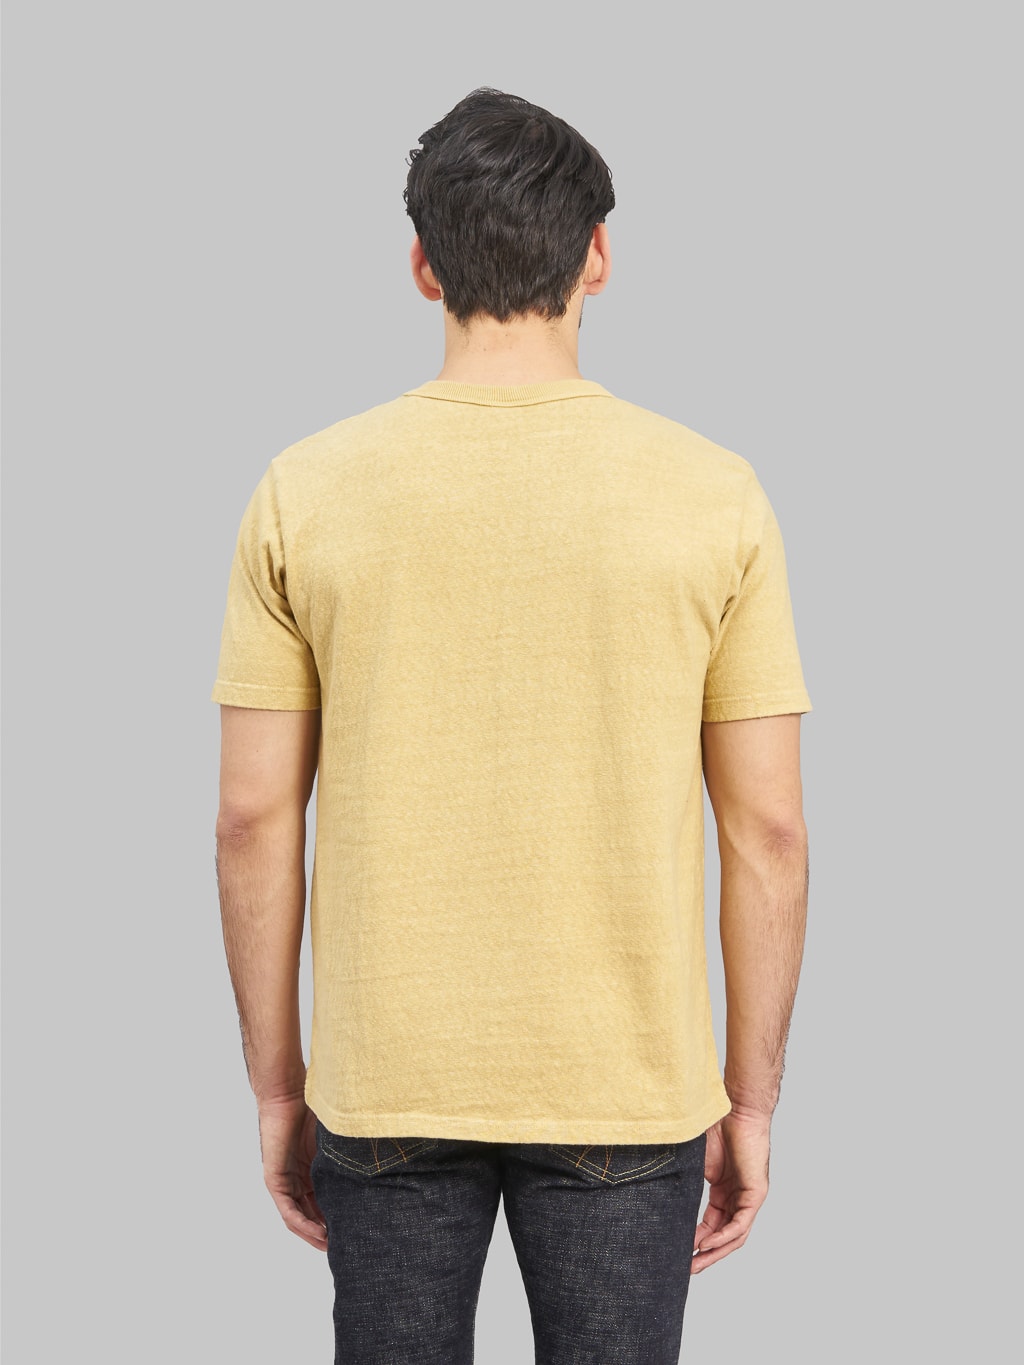 UES No.8 Slub Nep Short Sleeve T-Shirt Light Yellow